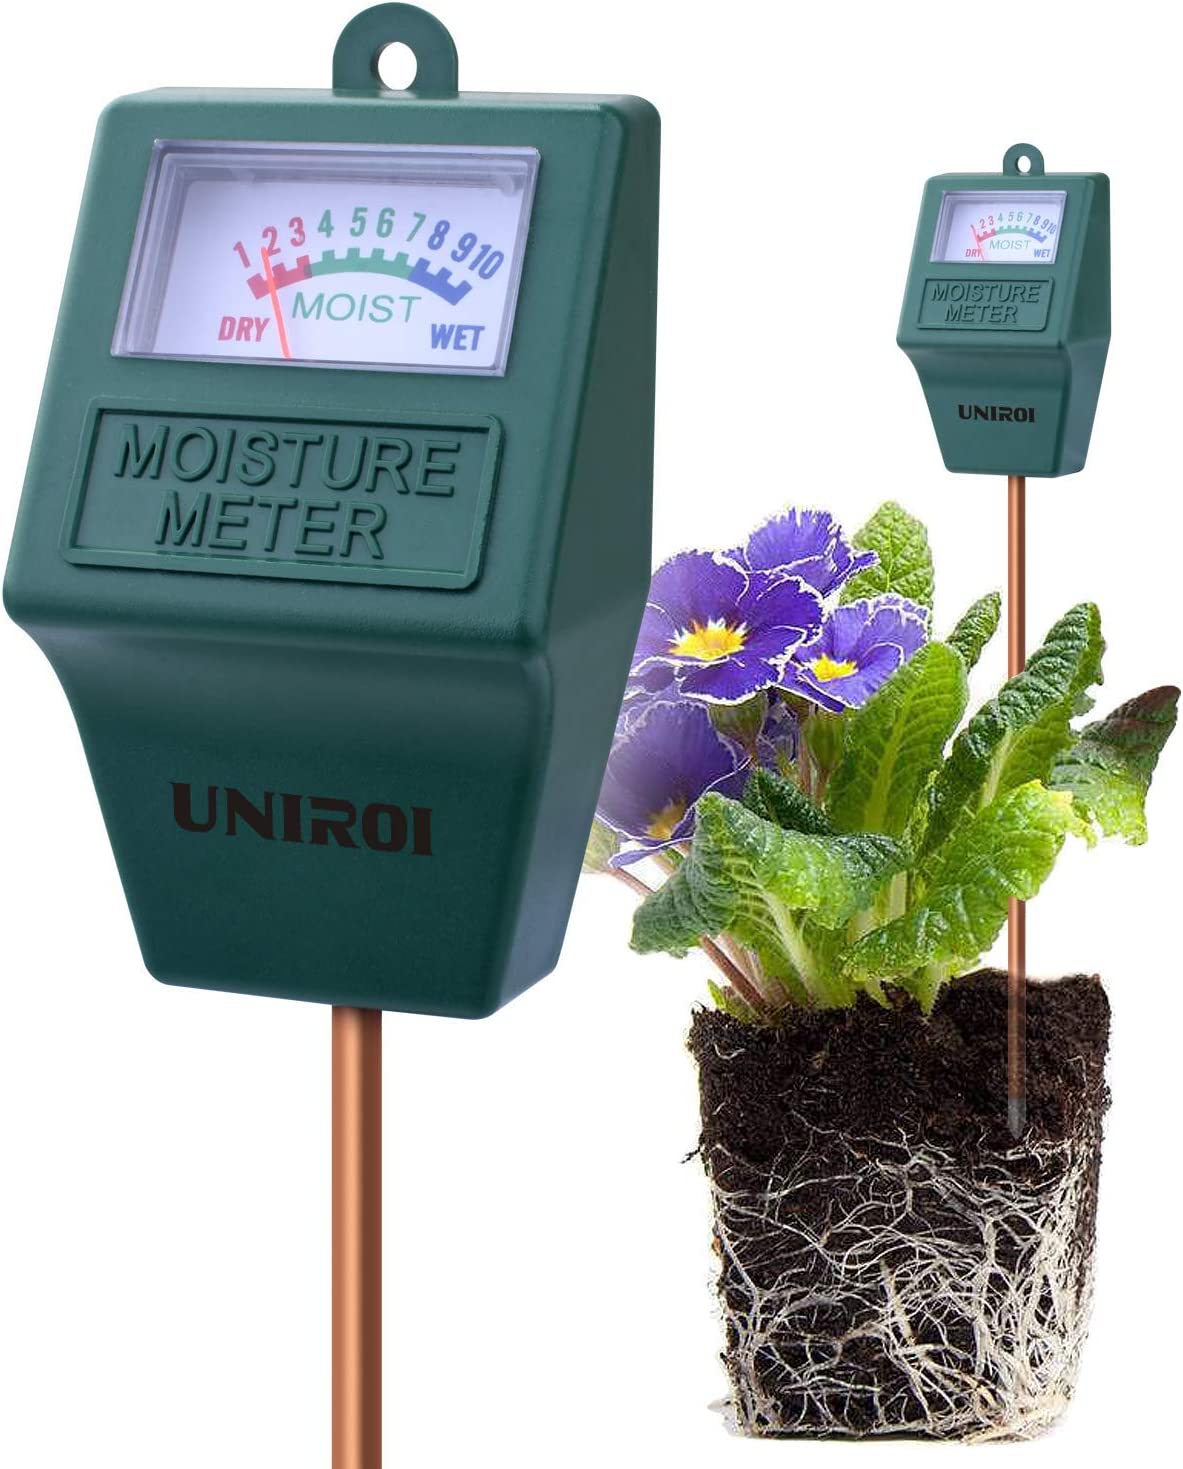 UNIROI Soil Moisture Meter Indoor & Outdoor, Soil Tester, Soil Moisture Sensor for Garden, Farm, Lawn Plants (No Battery Needed)